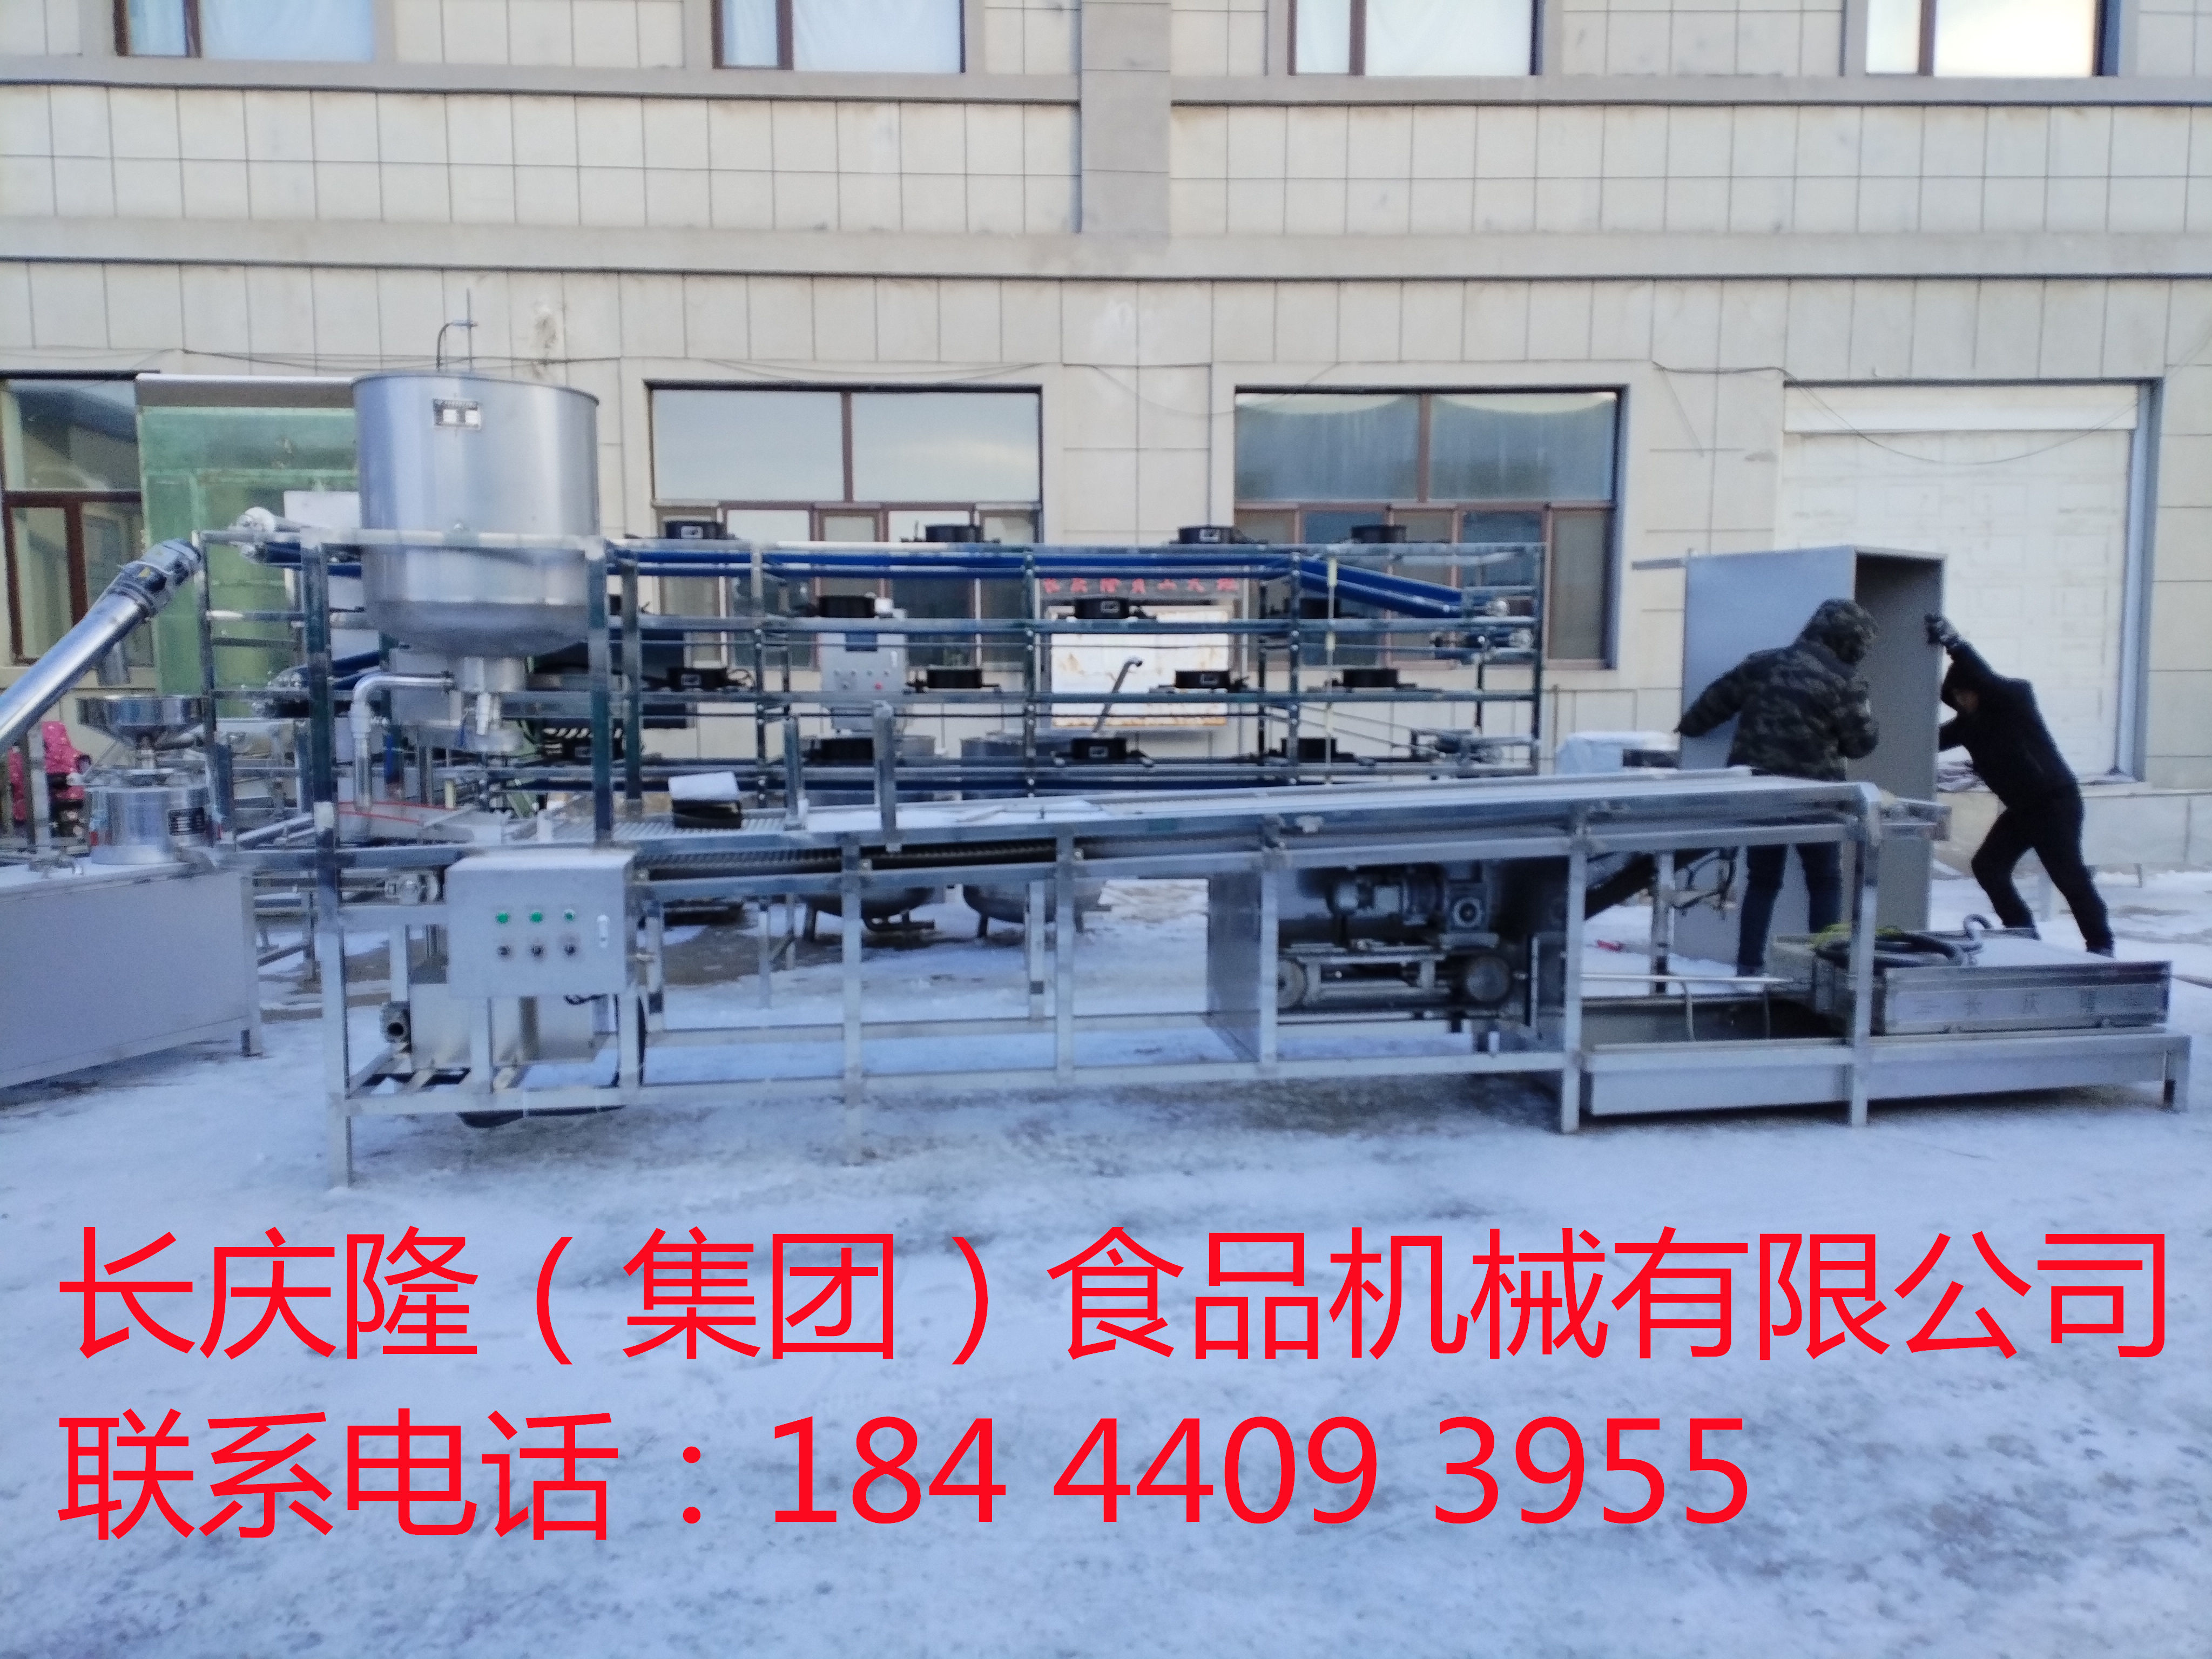 河北滦县客户订购的大型干豆腐机生产线马上装车 (3)_副本.jpg